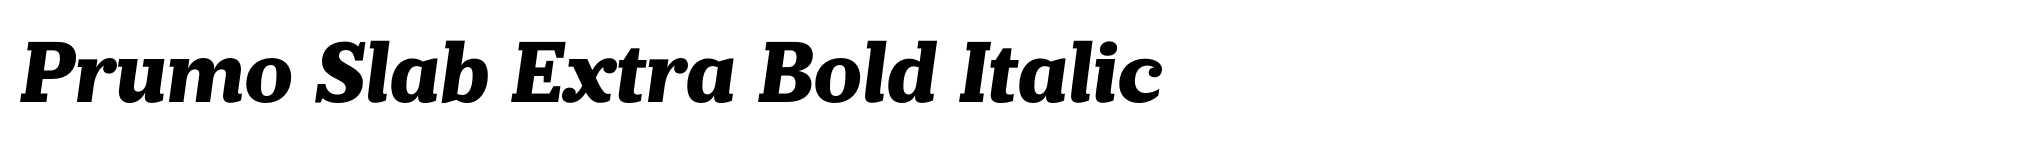 Prumo Slab Extra Bold Italic image